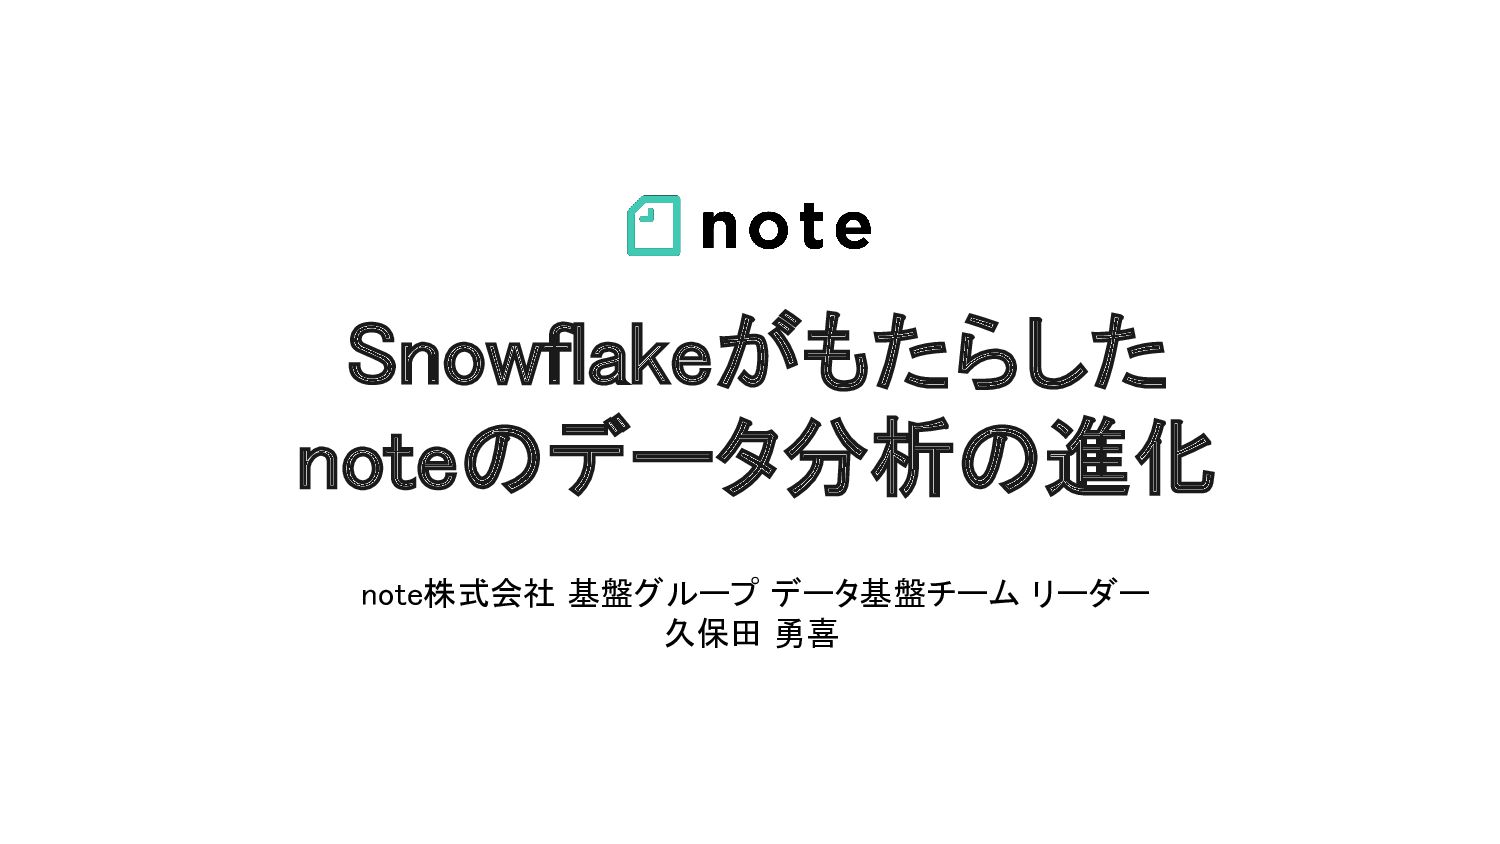 Snowflakeがもたらした noteのデータ分析の進化